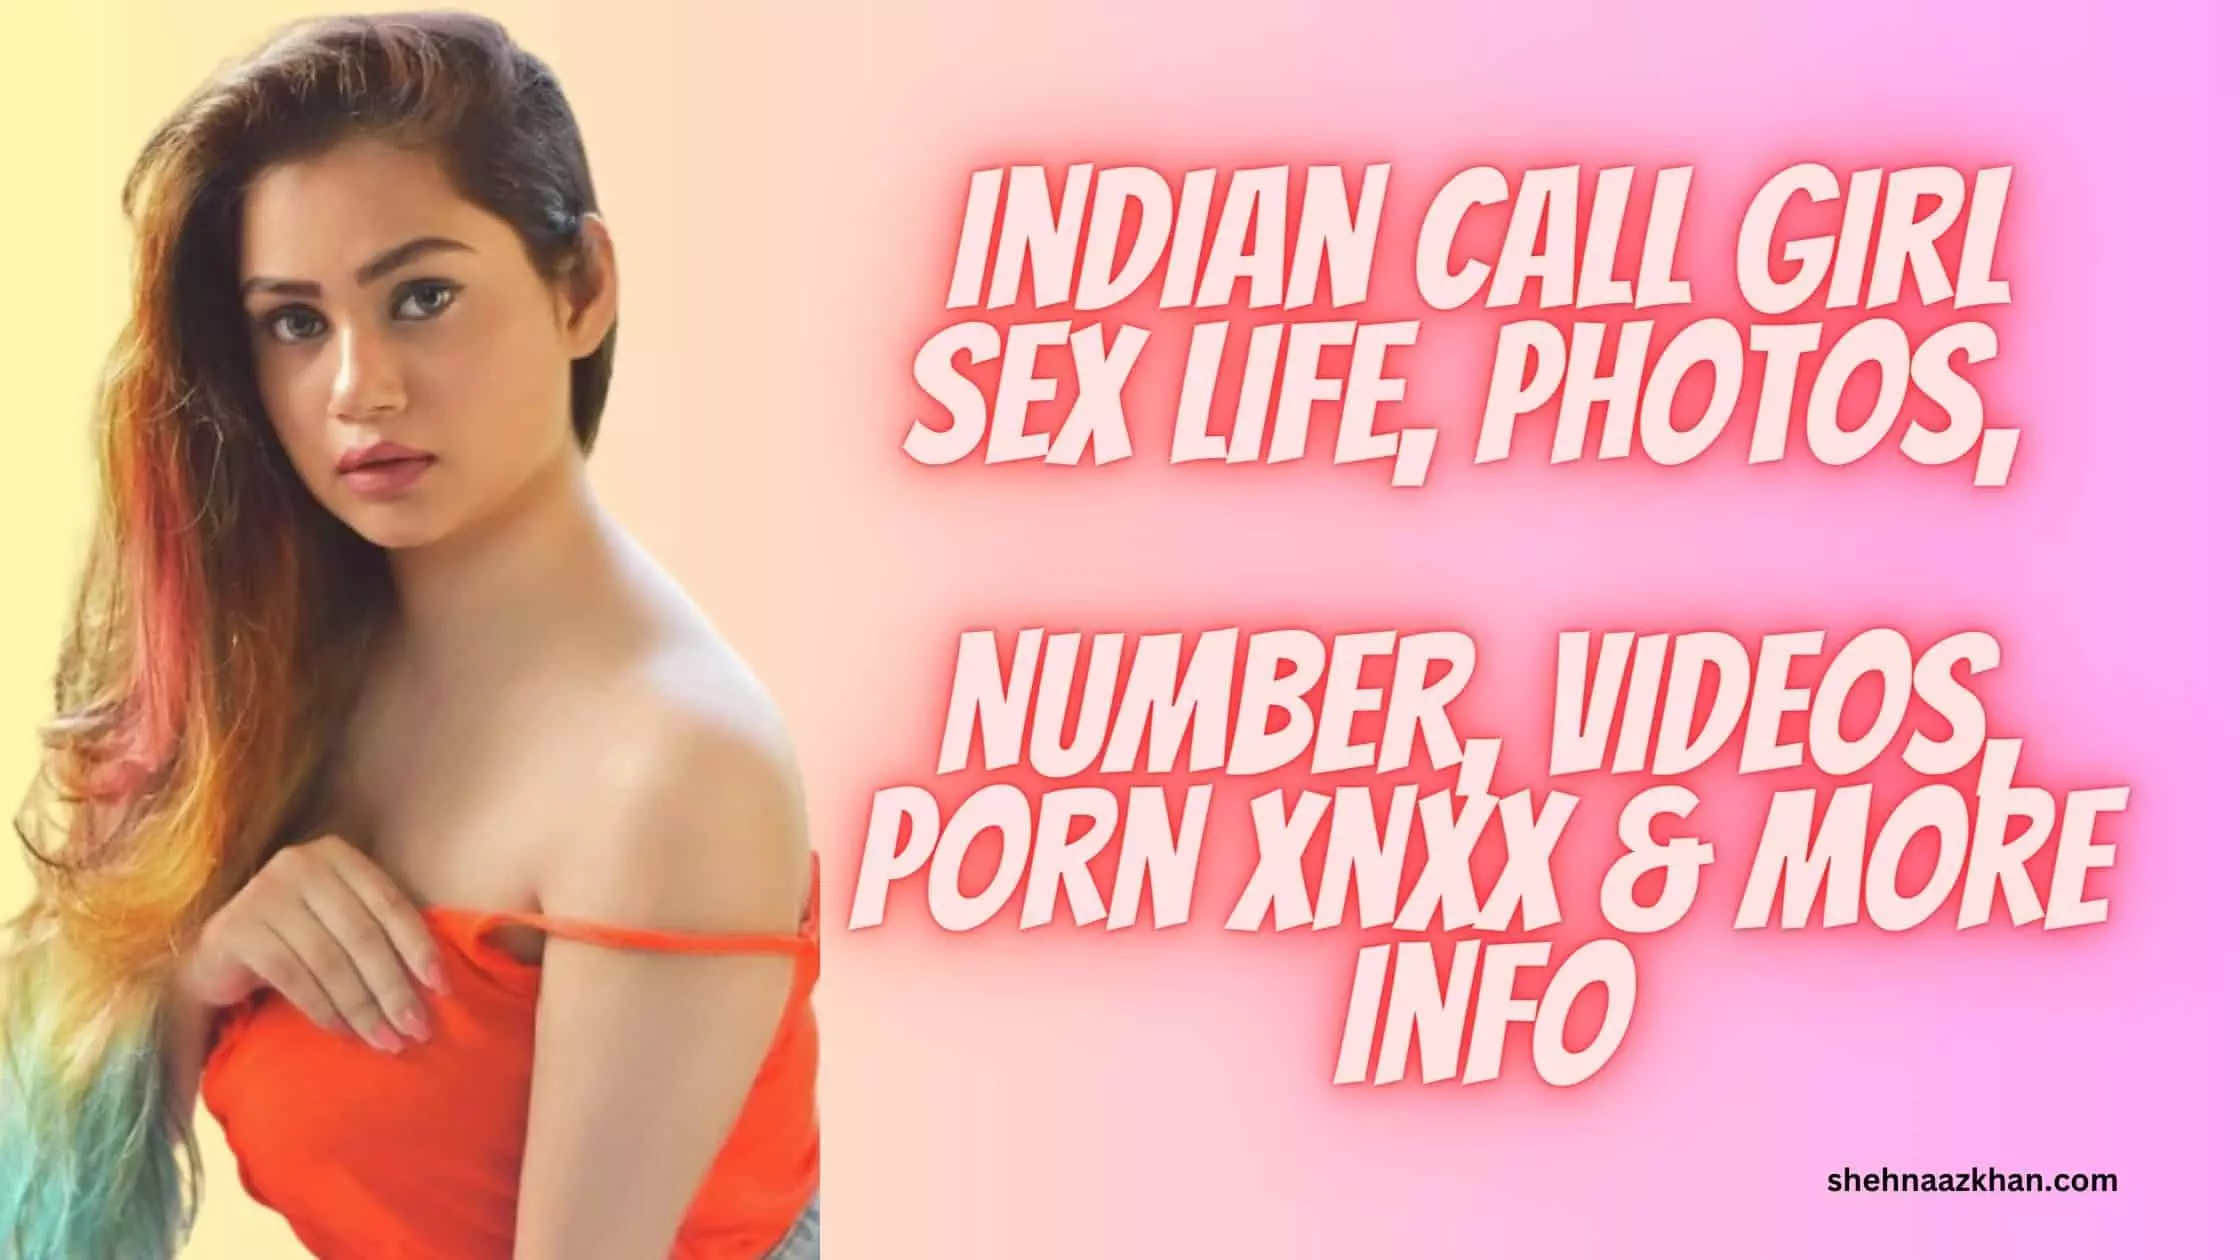 Indian Call Girl Sex Life, Hot Photos, Number, Porn Videos